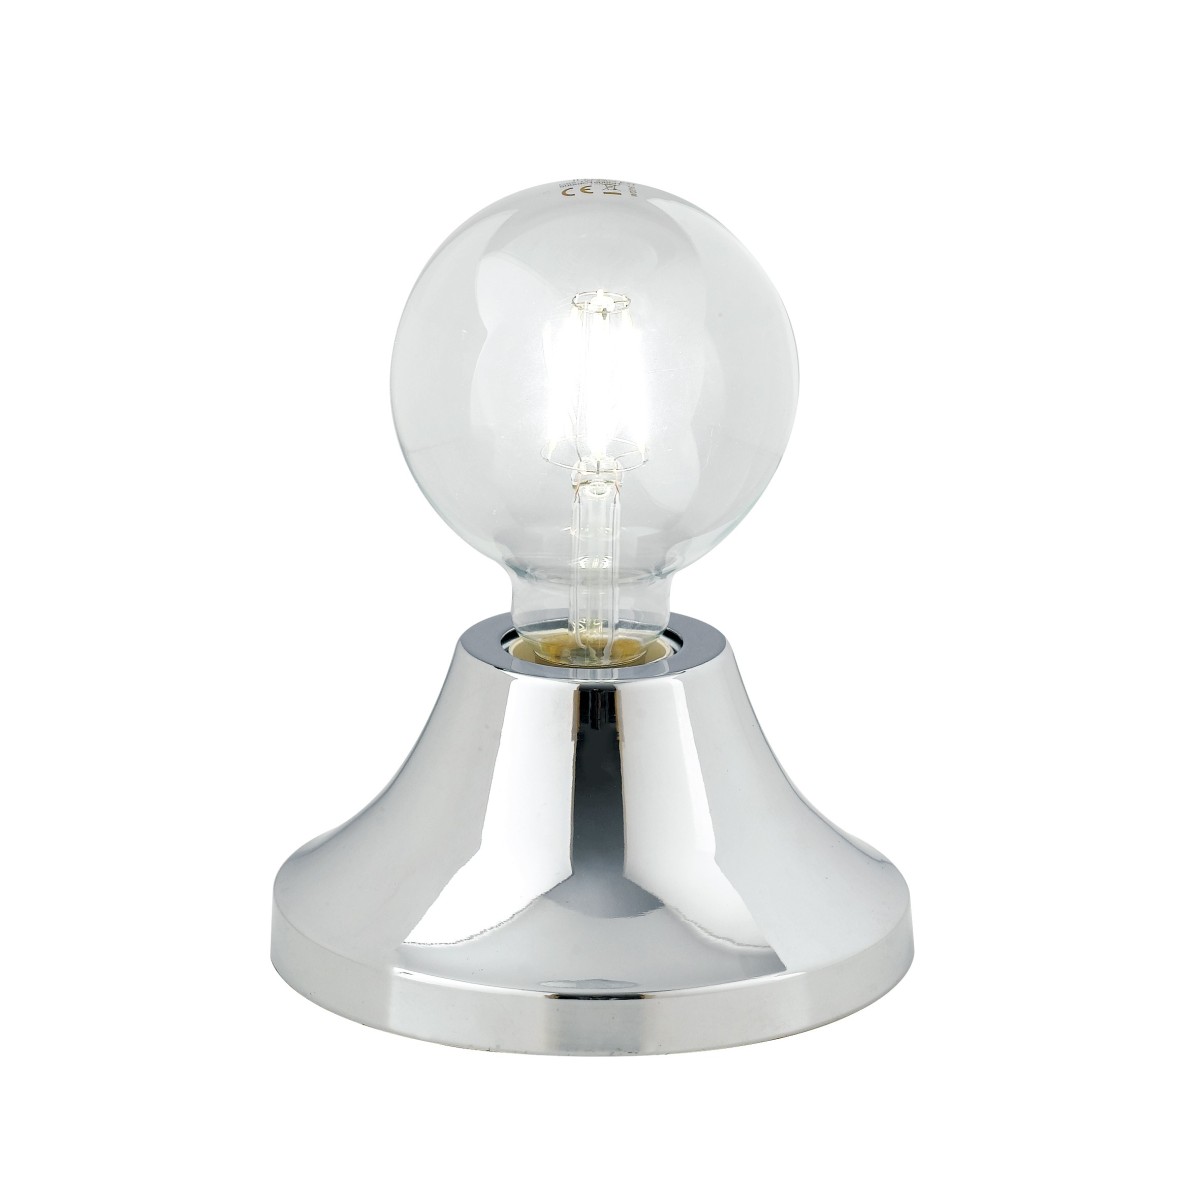 Lume da tavolo Vesevus in metallo cromo satinato dm 15 cm lampada a vista